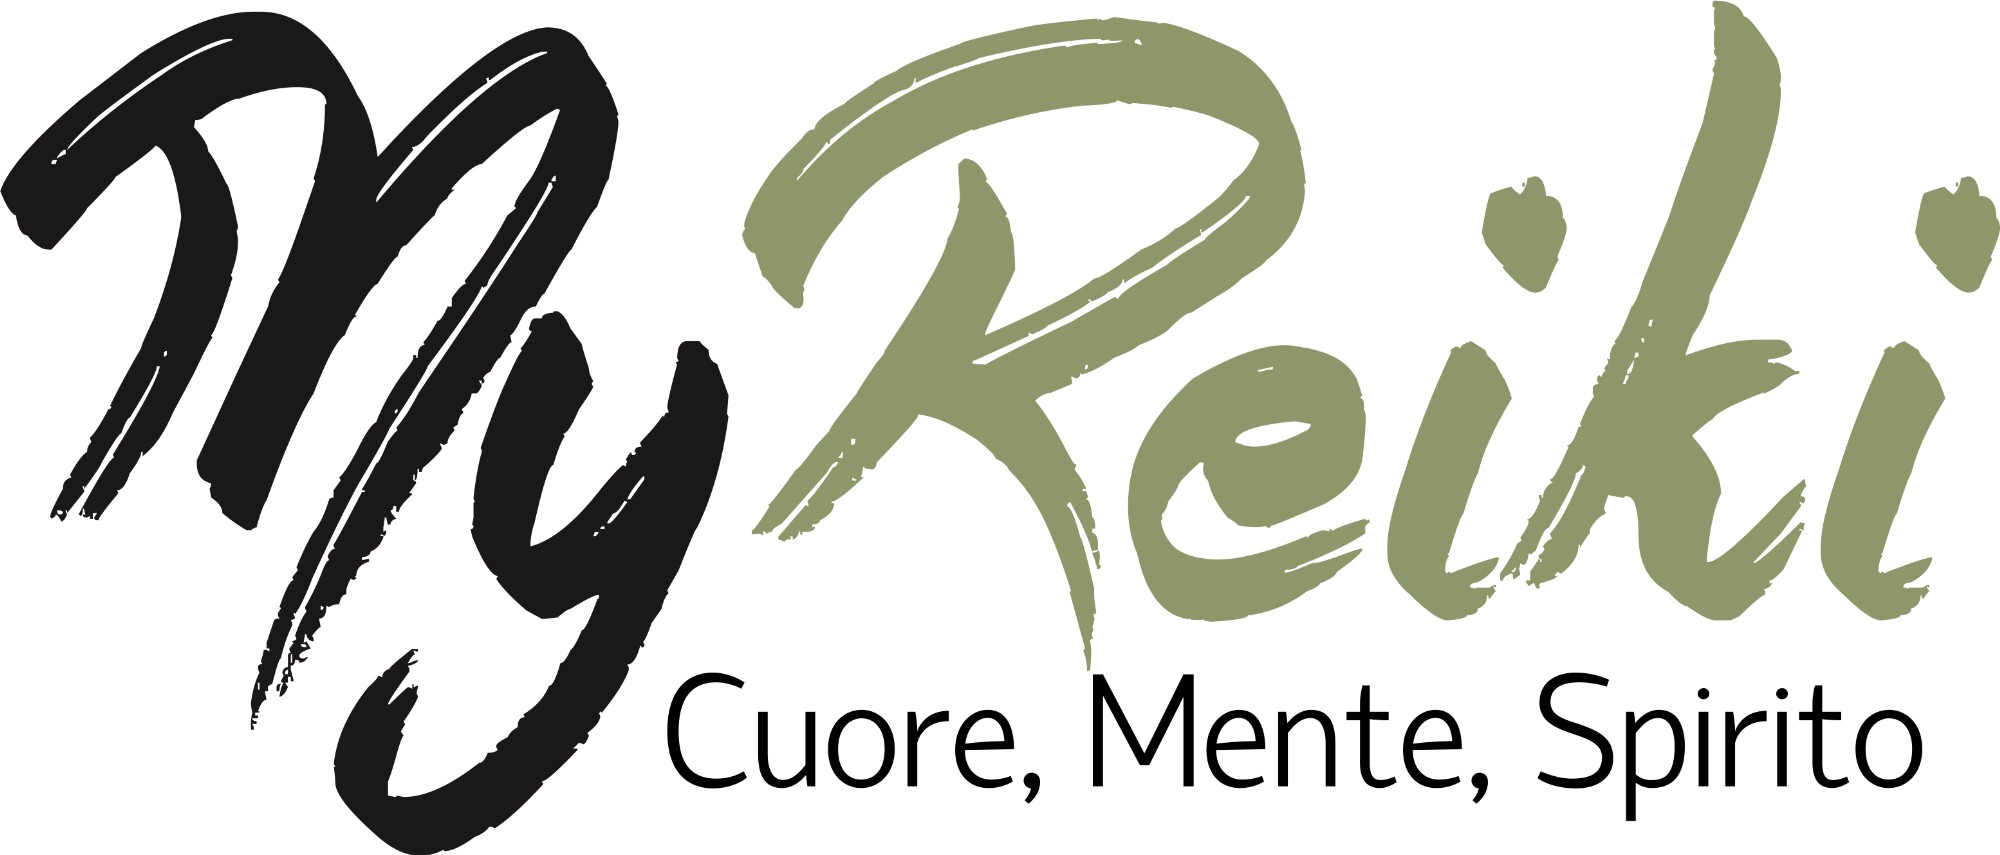 My Reiki logo